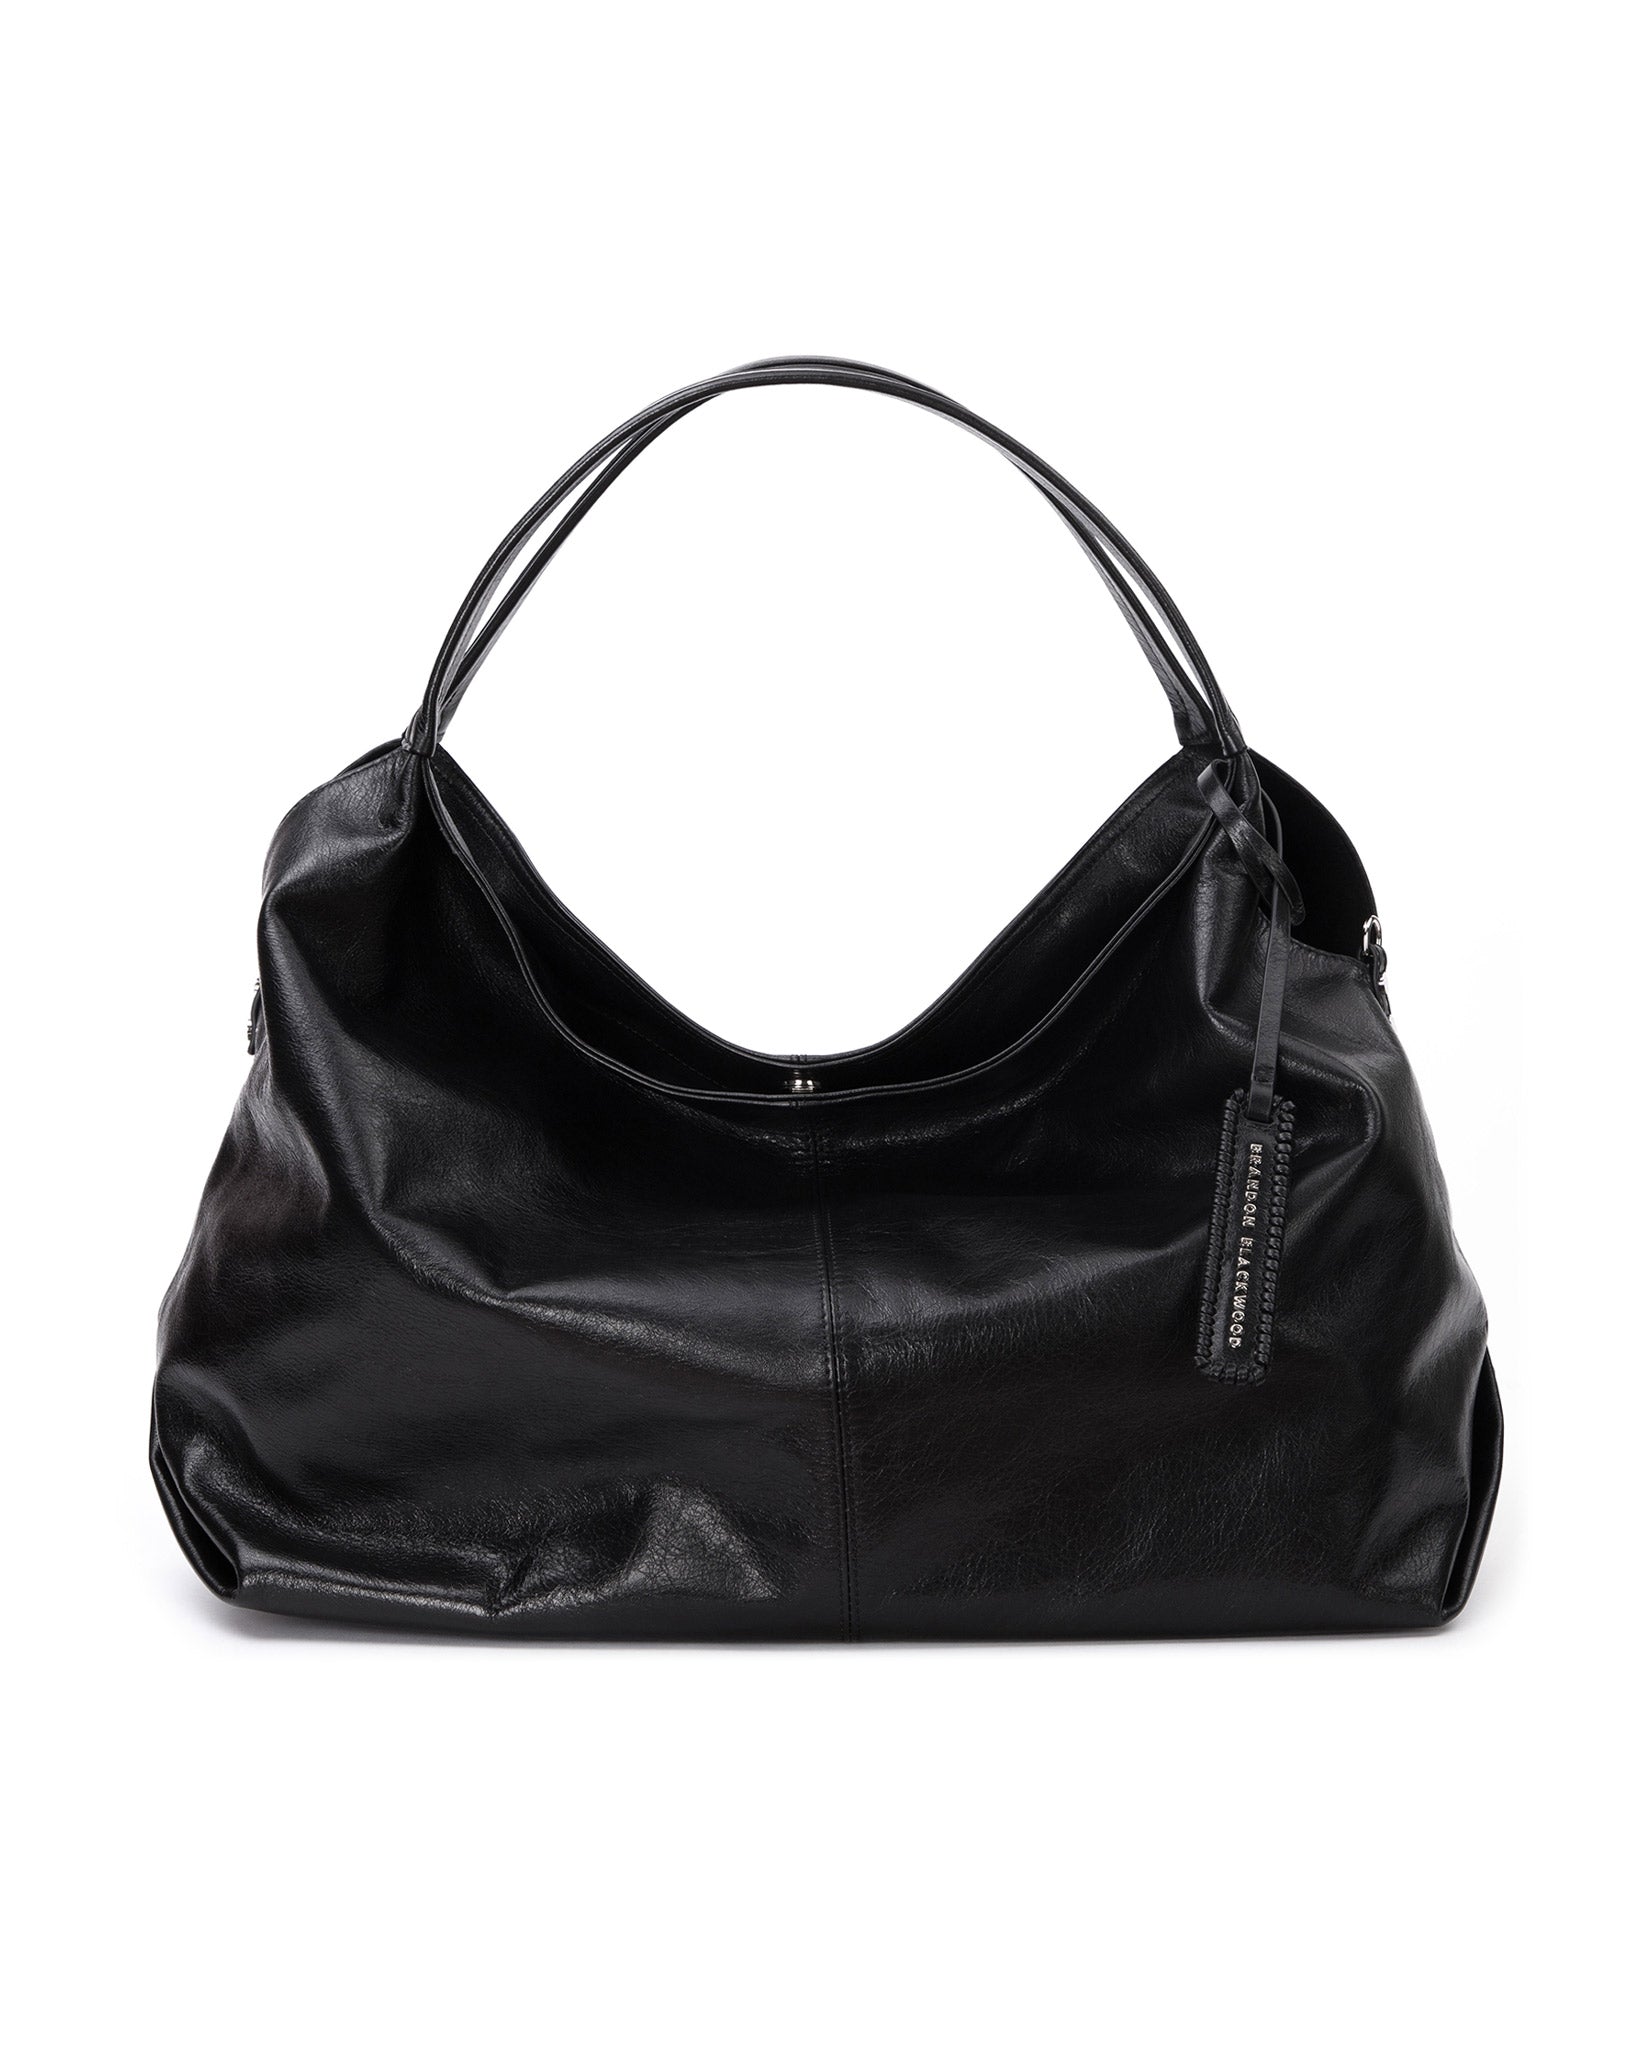 Furla Liz Leather Hobo Bag in Black